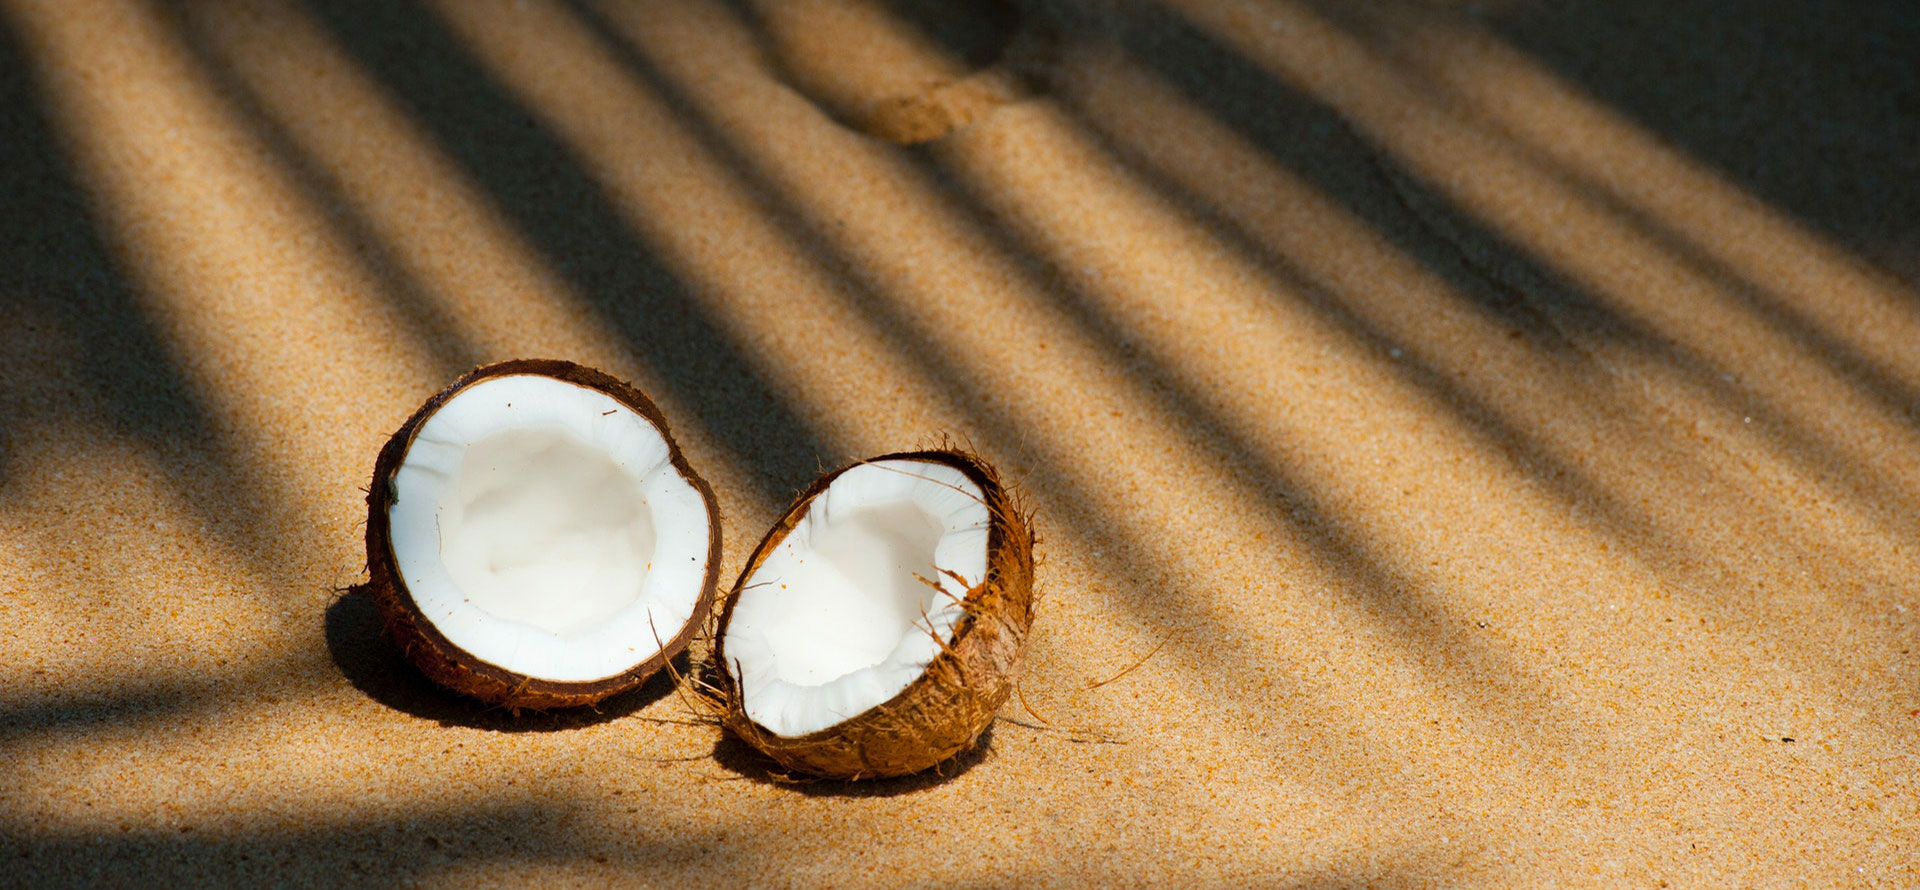 Coconut in US Virgin Islands.